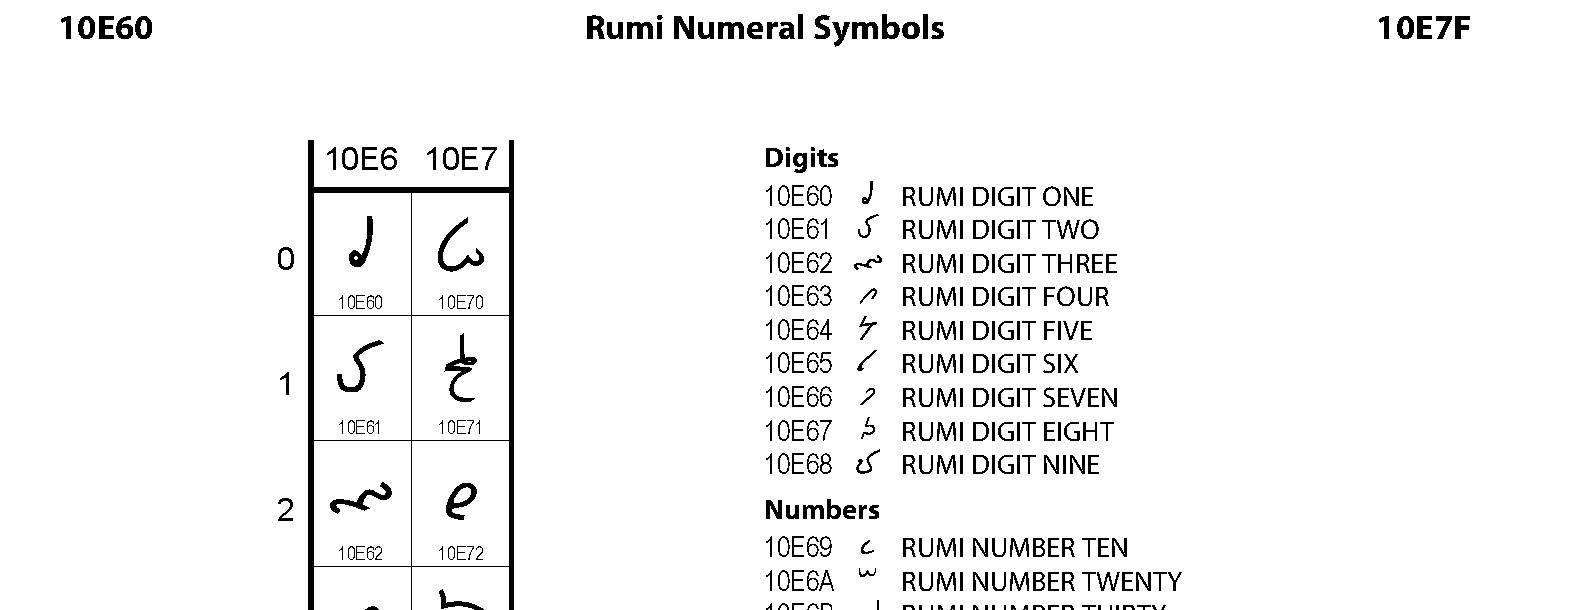 Unicode - Rumi Numeral Symbols